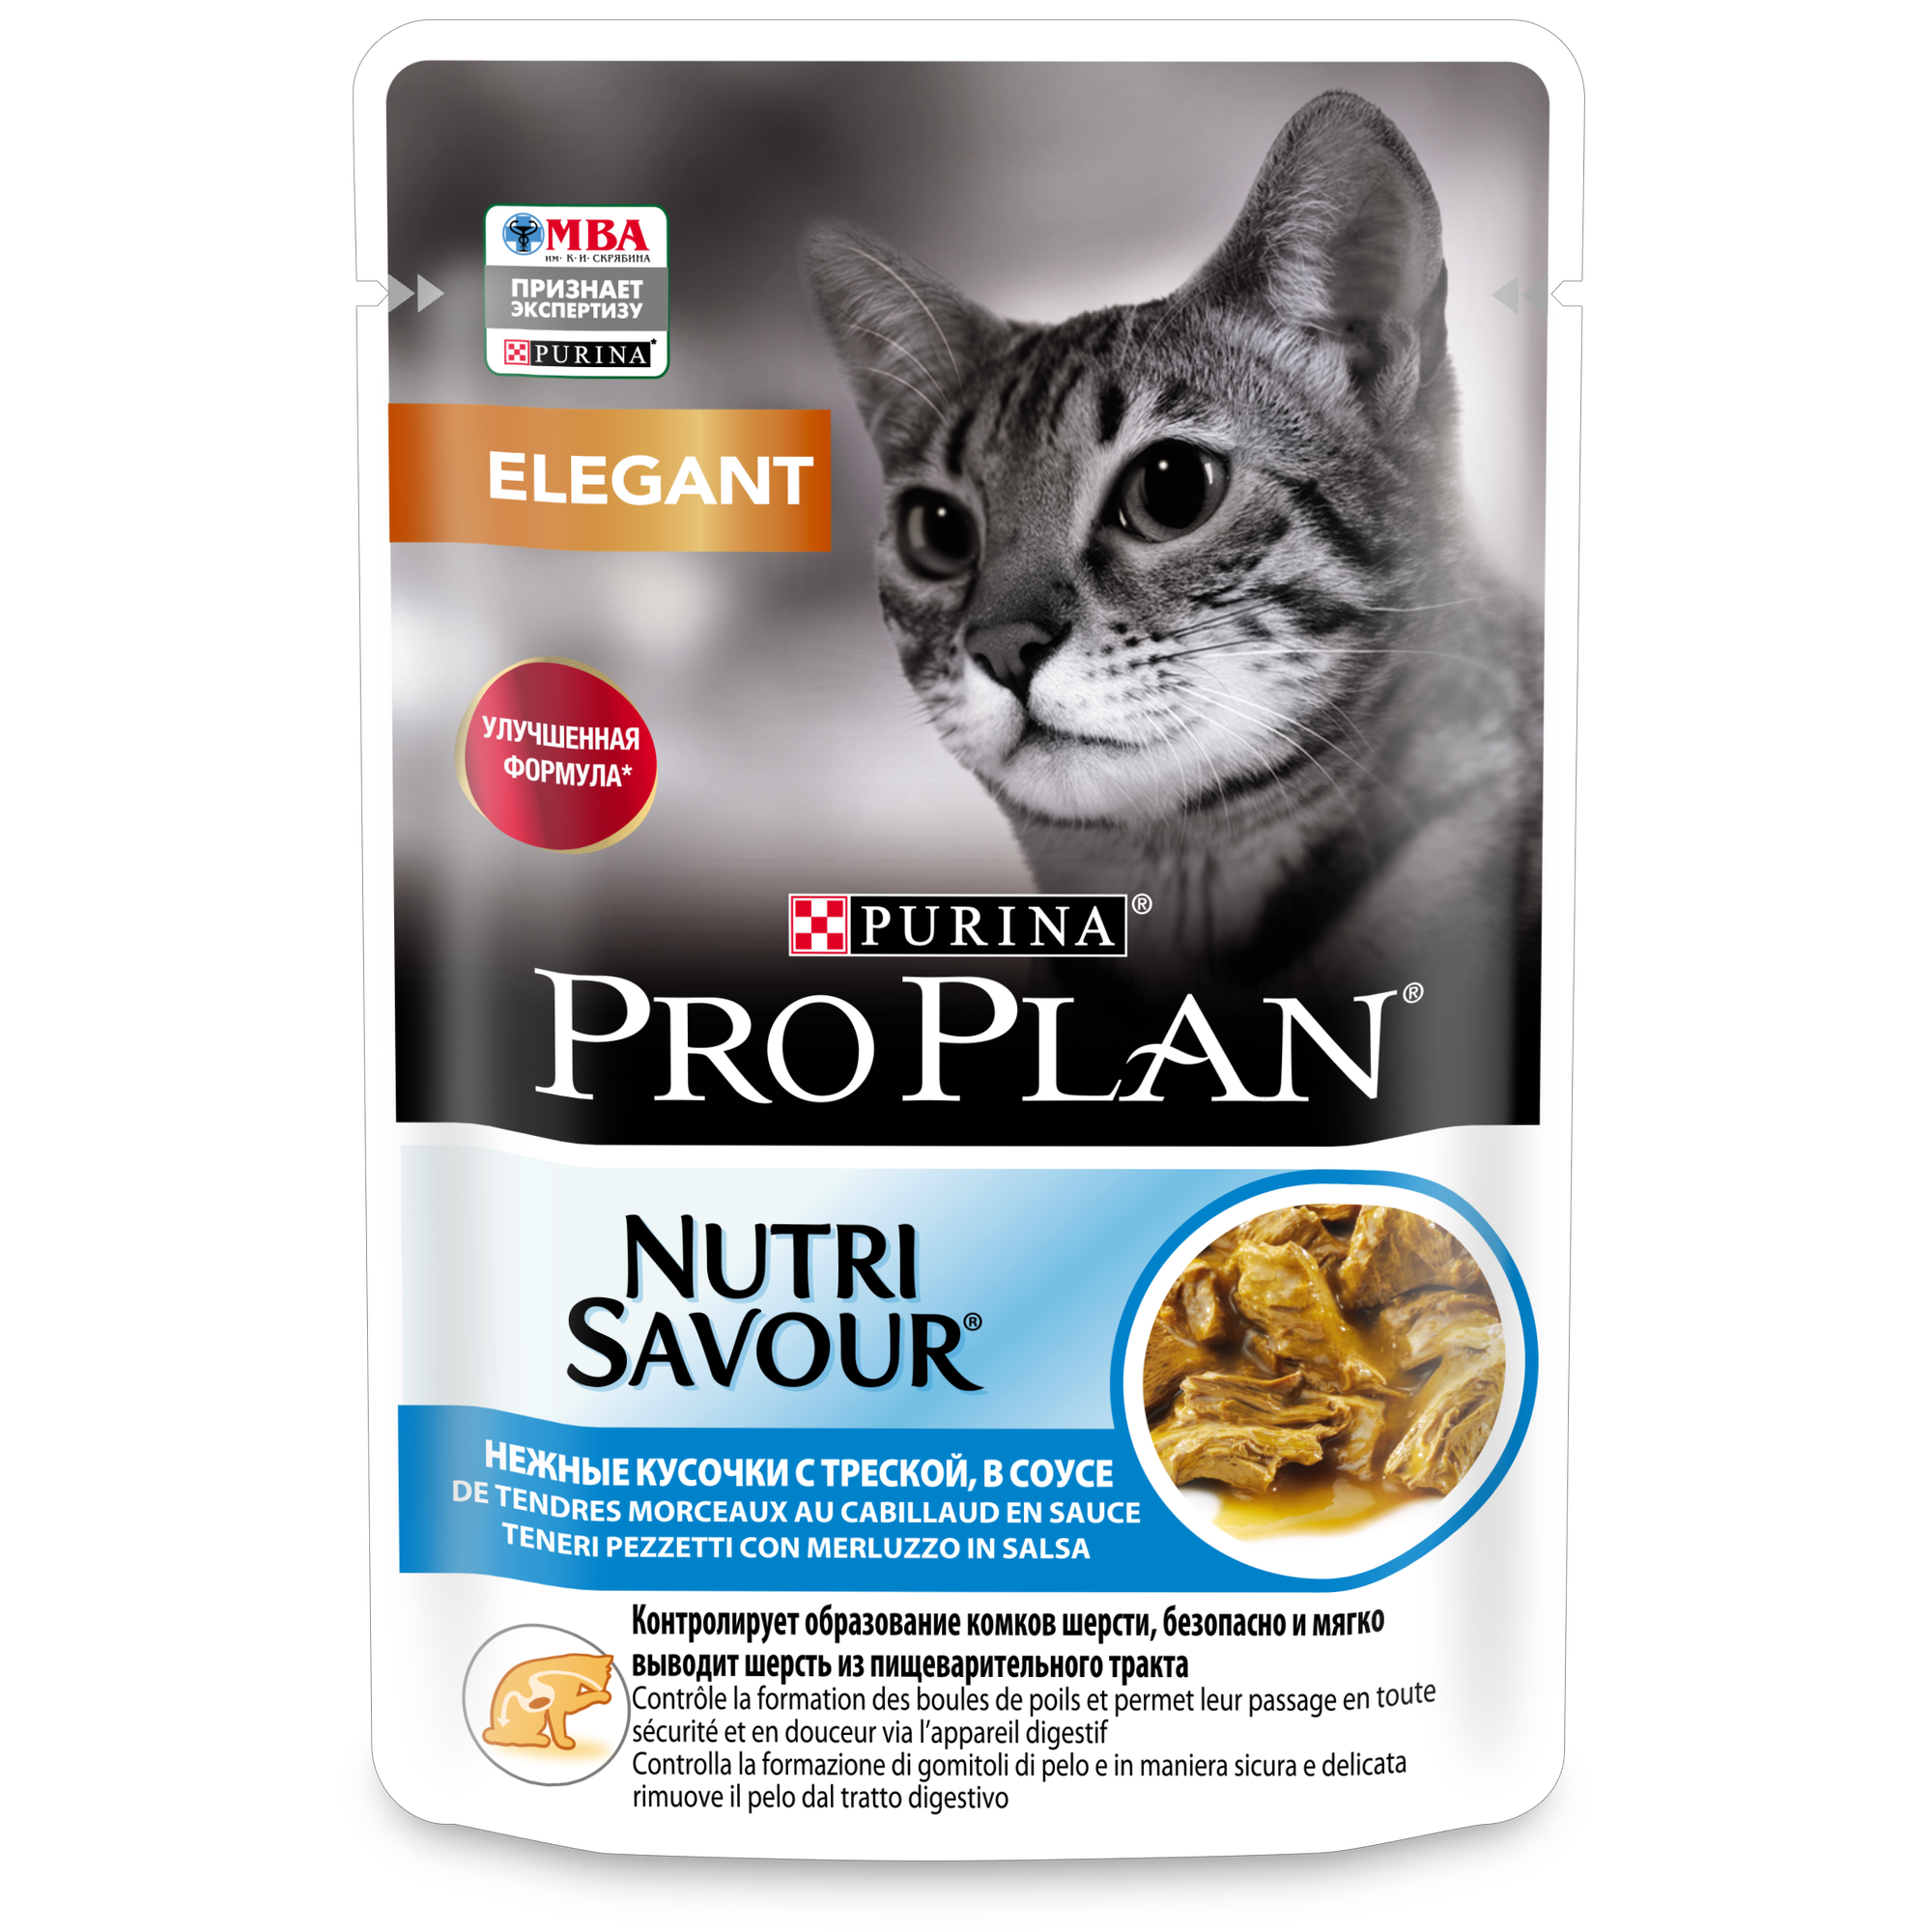 Pro Plan ® Nutri Savour влажный корм для взрослых кошек с чувствительной кожей, нежные кусочки с треской, в соусе, 85 г - фото №13